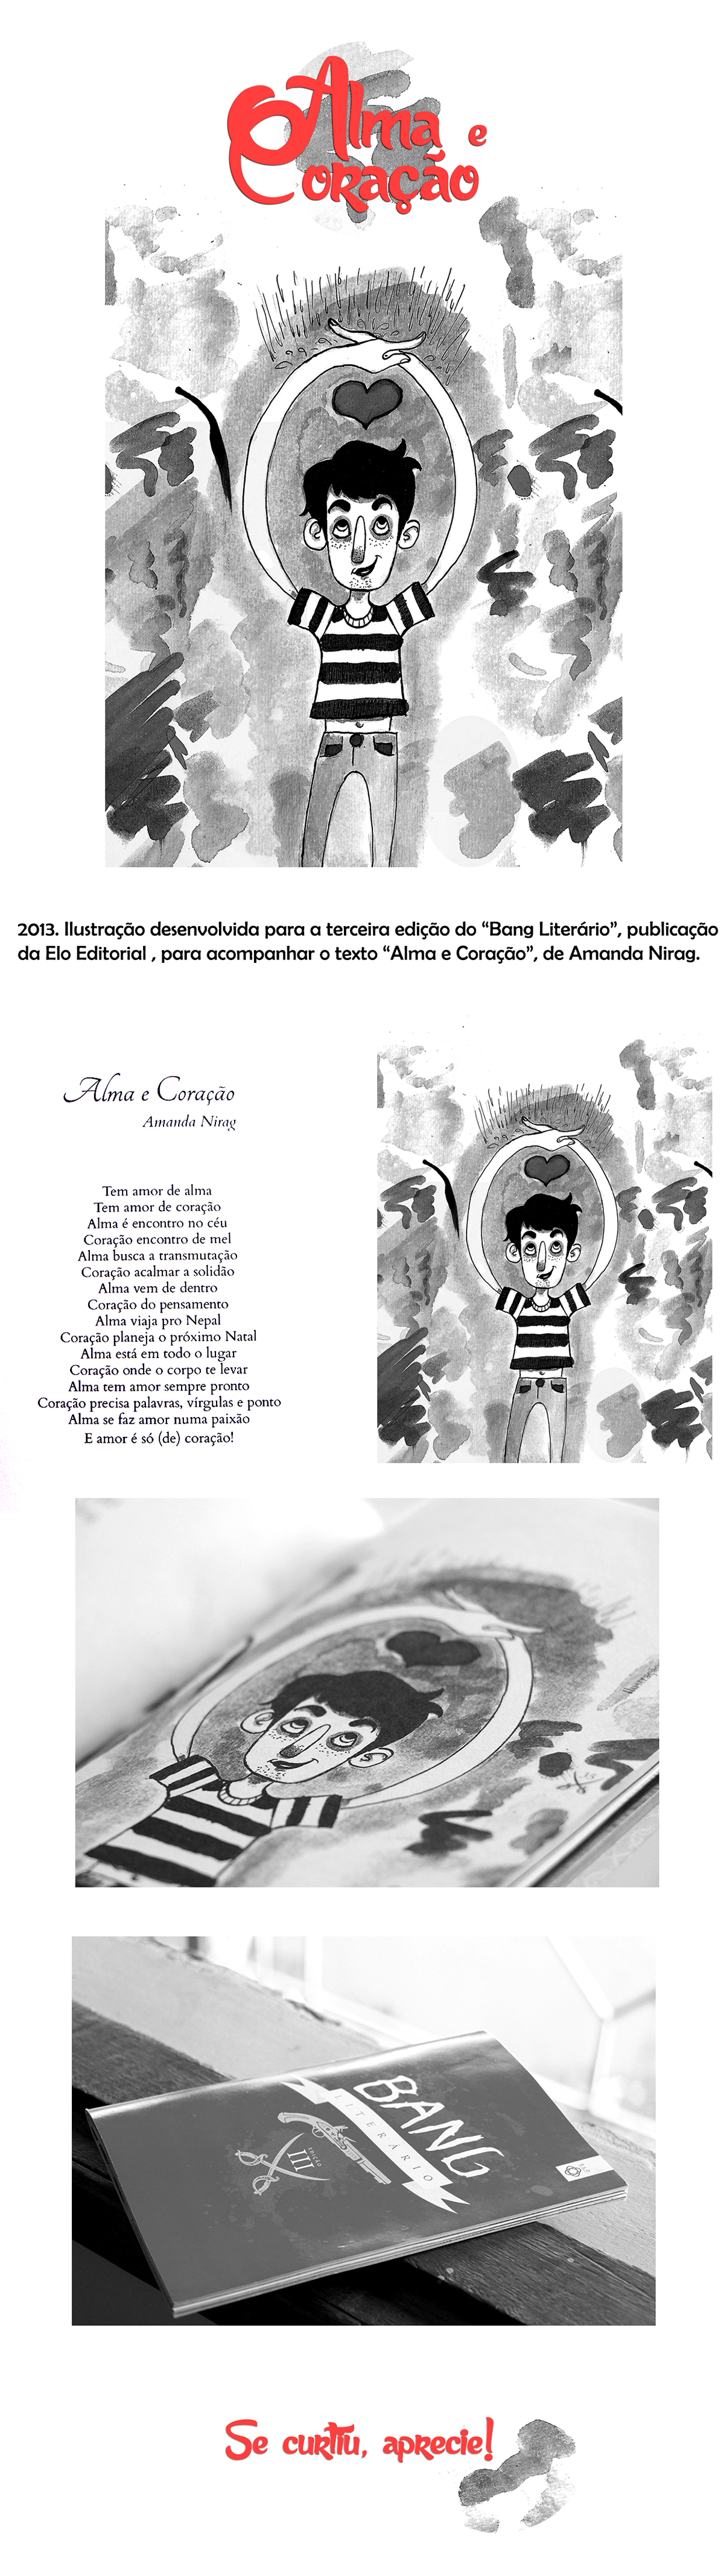 aquarela publicação book heart soul alma coração ilustração infantil ilustração de livro book illustration children illustration black and white preto e branco b&w watercolor